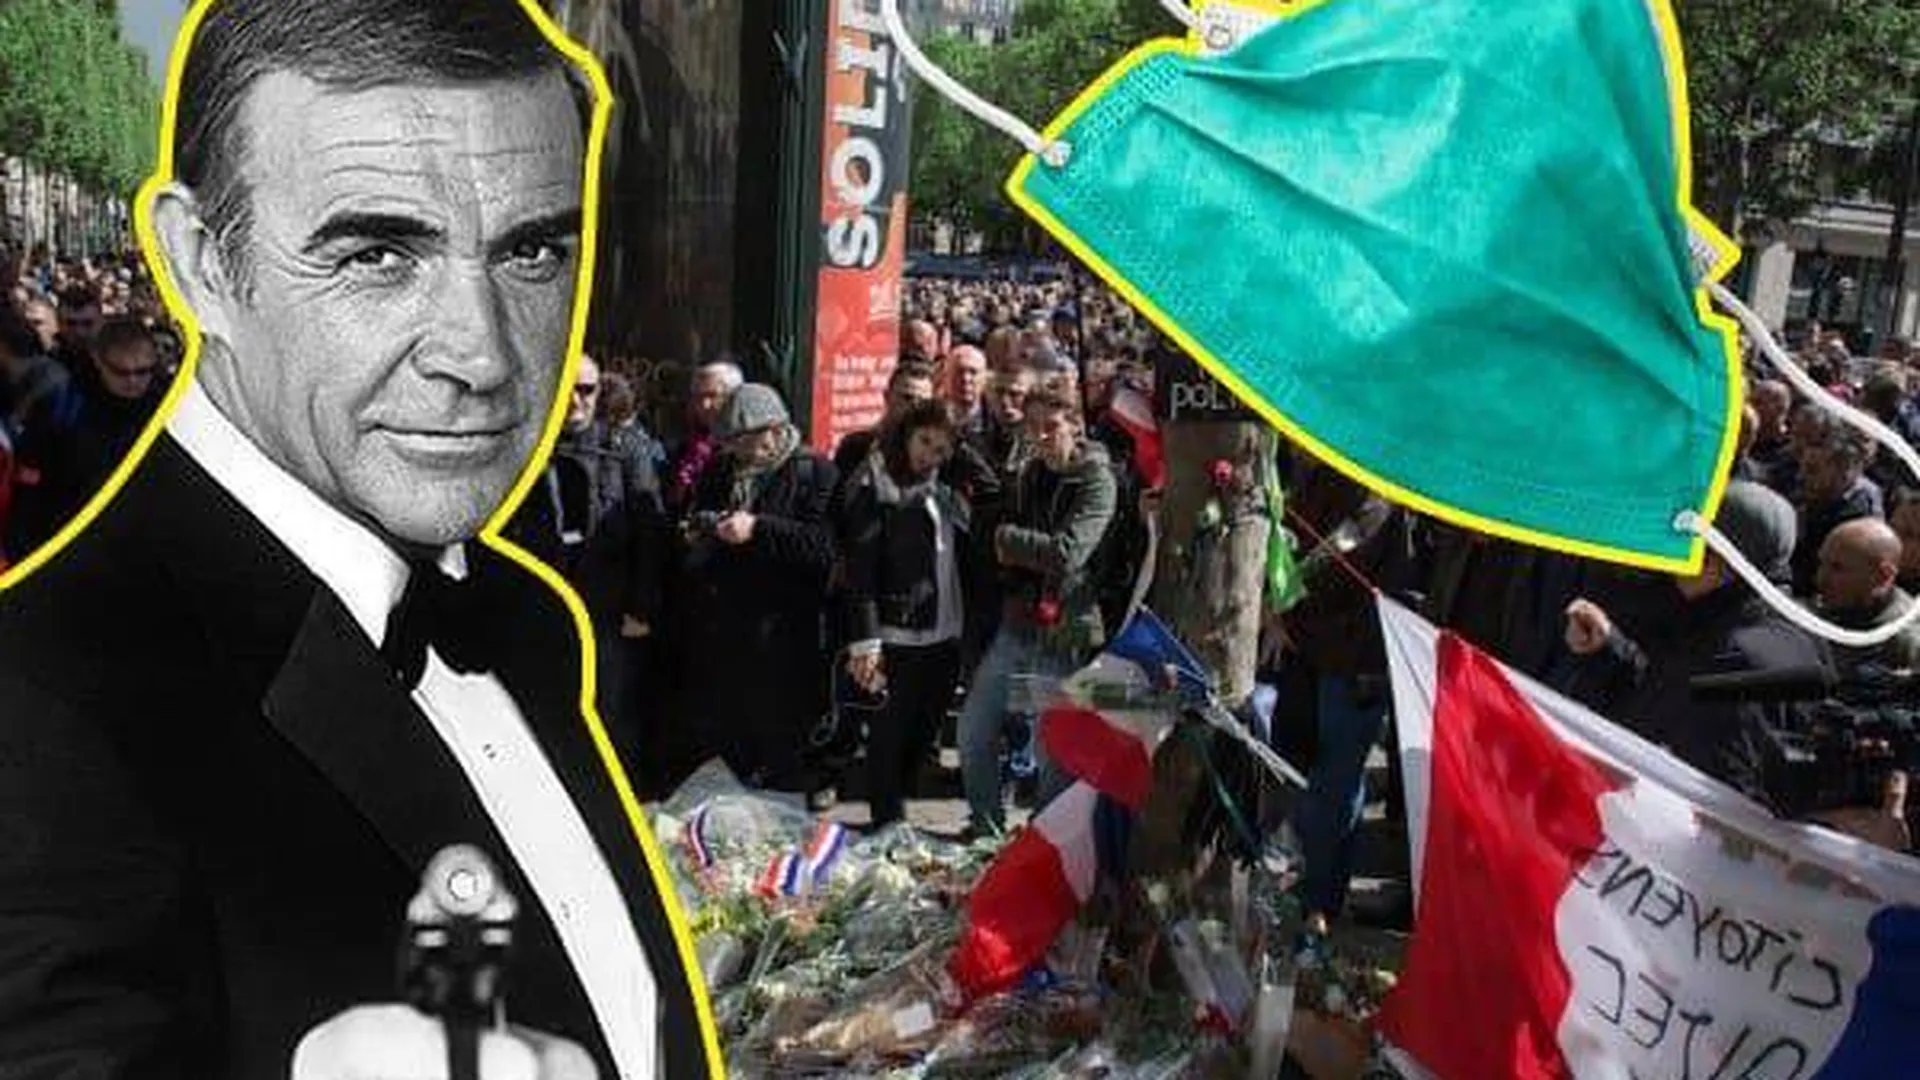 Всероссийский масочный режим, теракты во Франции, смерть Шона Коннери. Неделя в фотогалерее